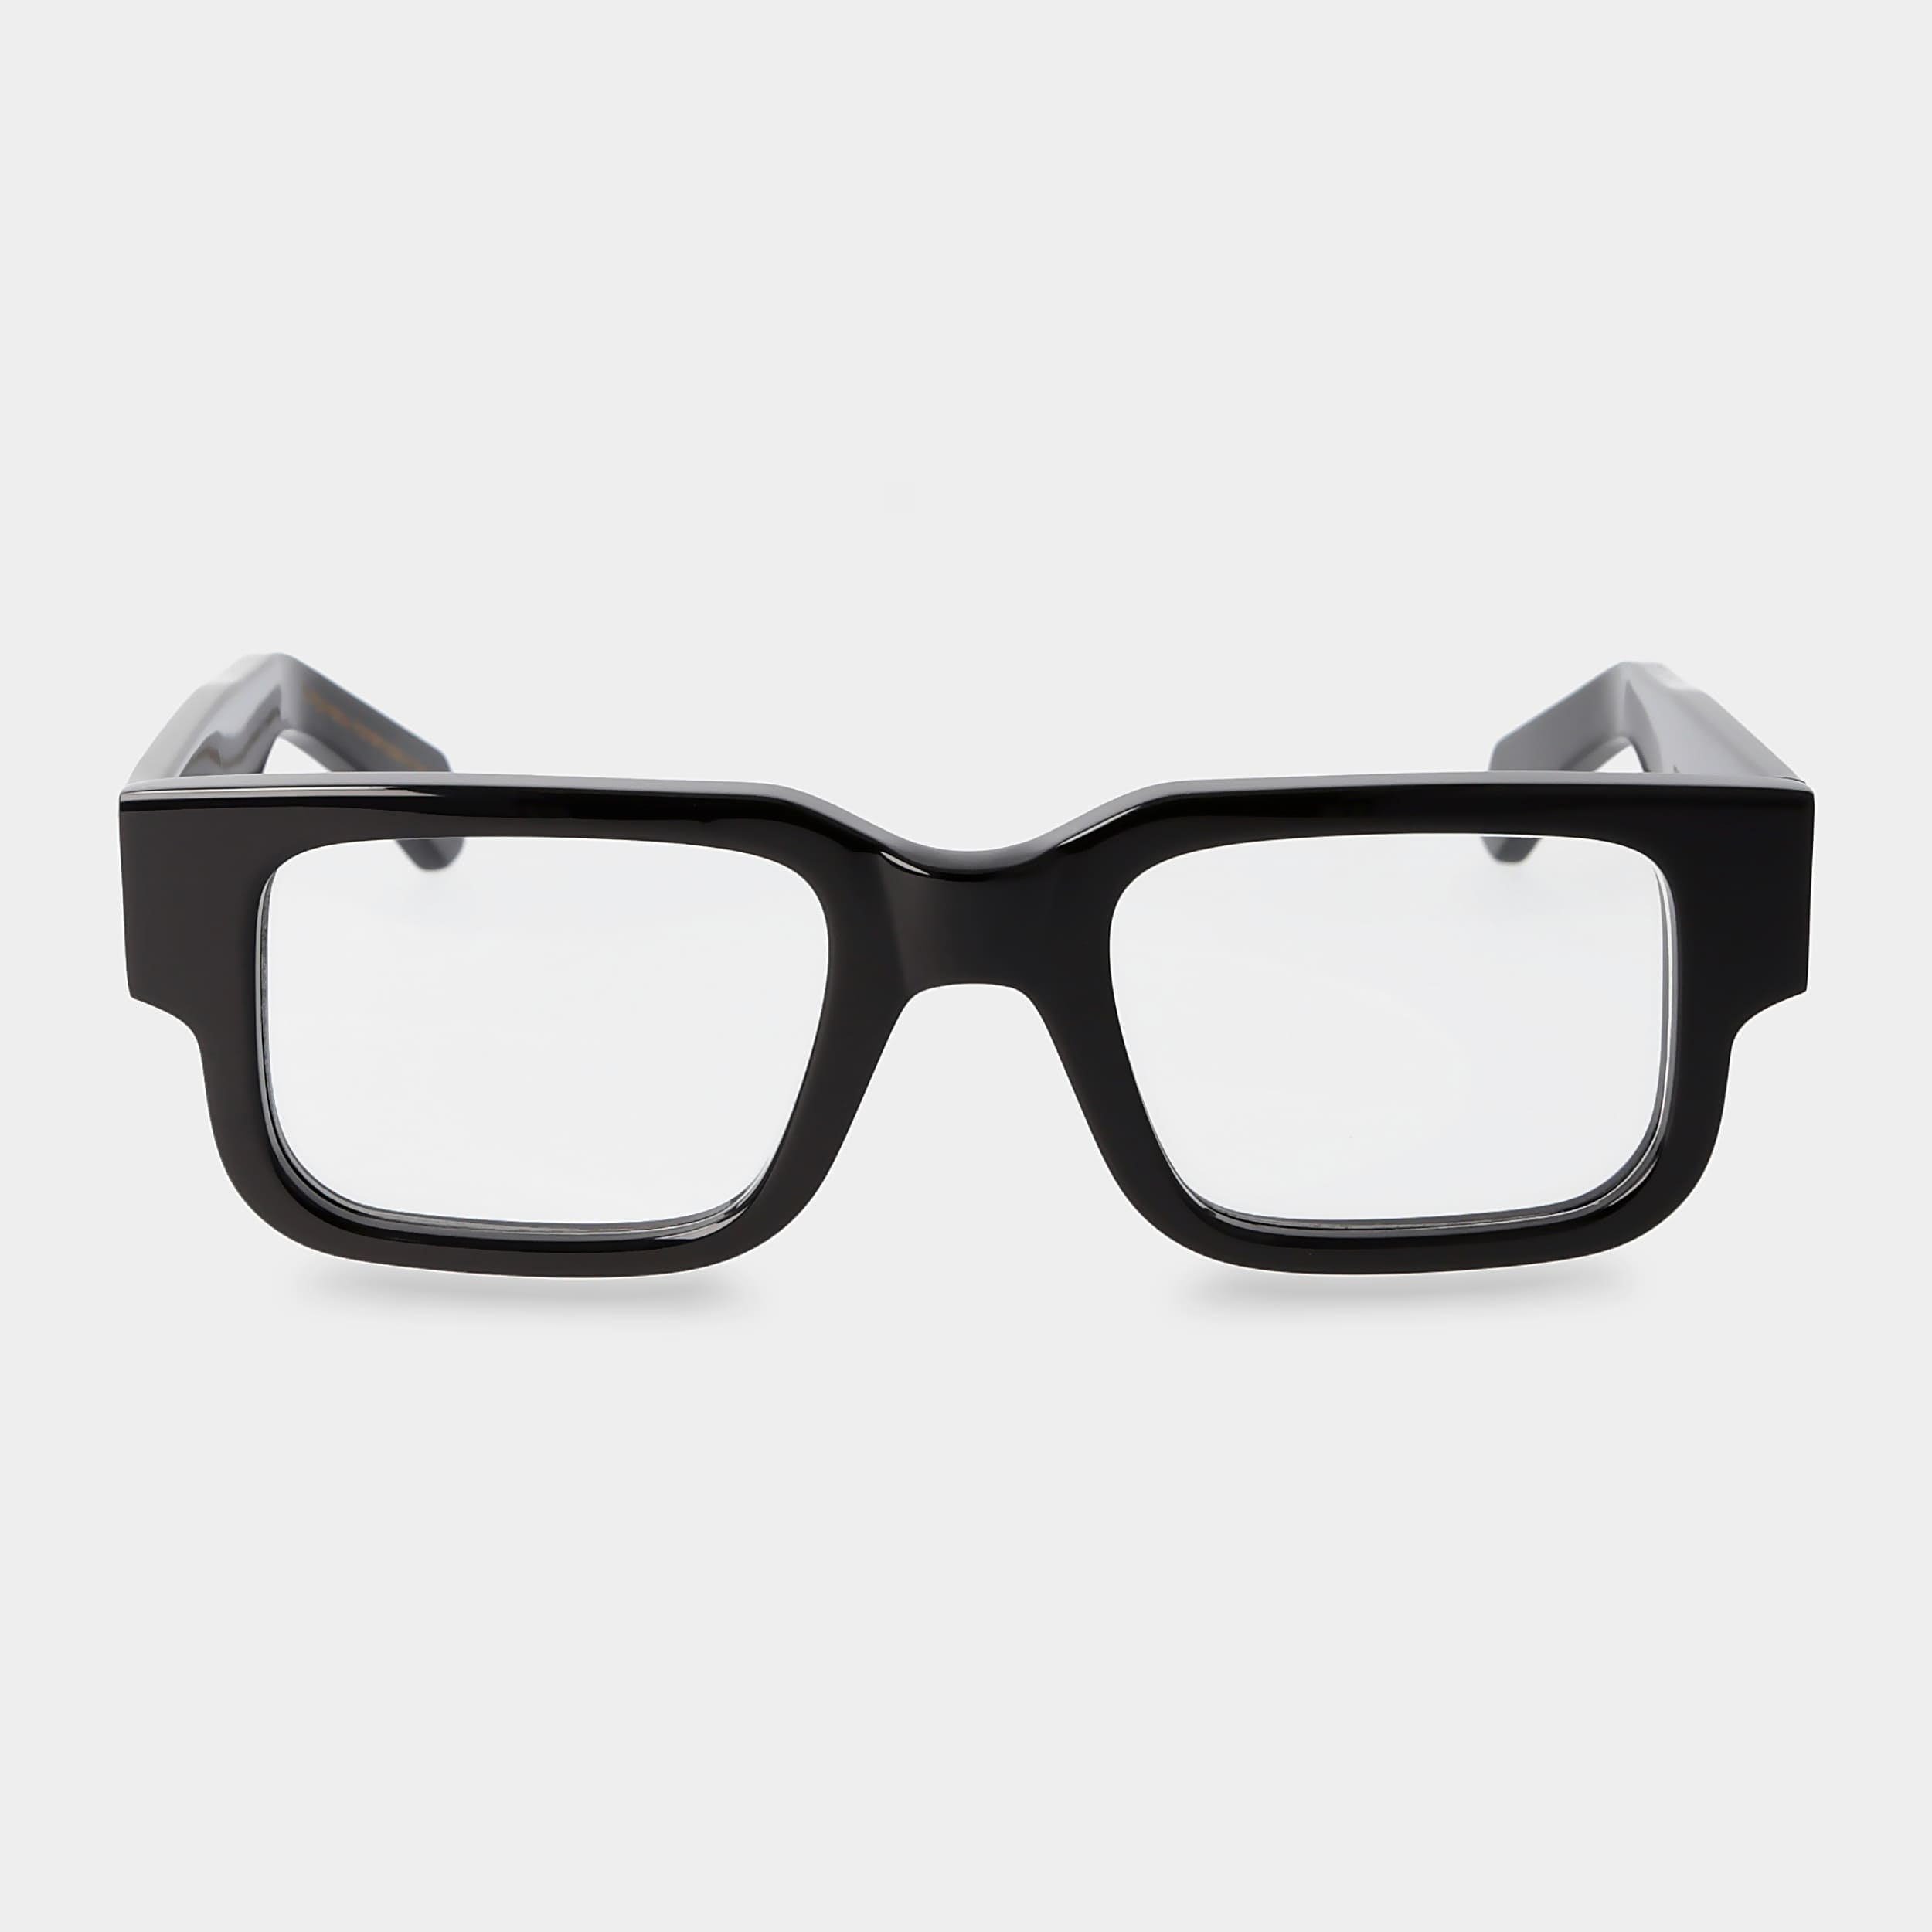 eyeglasses-silk-eco-black-optical-sustainable-tbd-eyewear-front